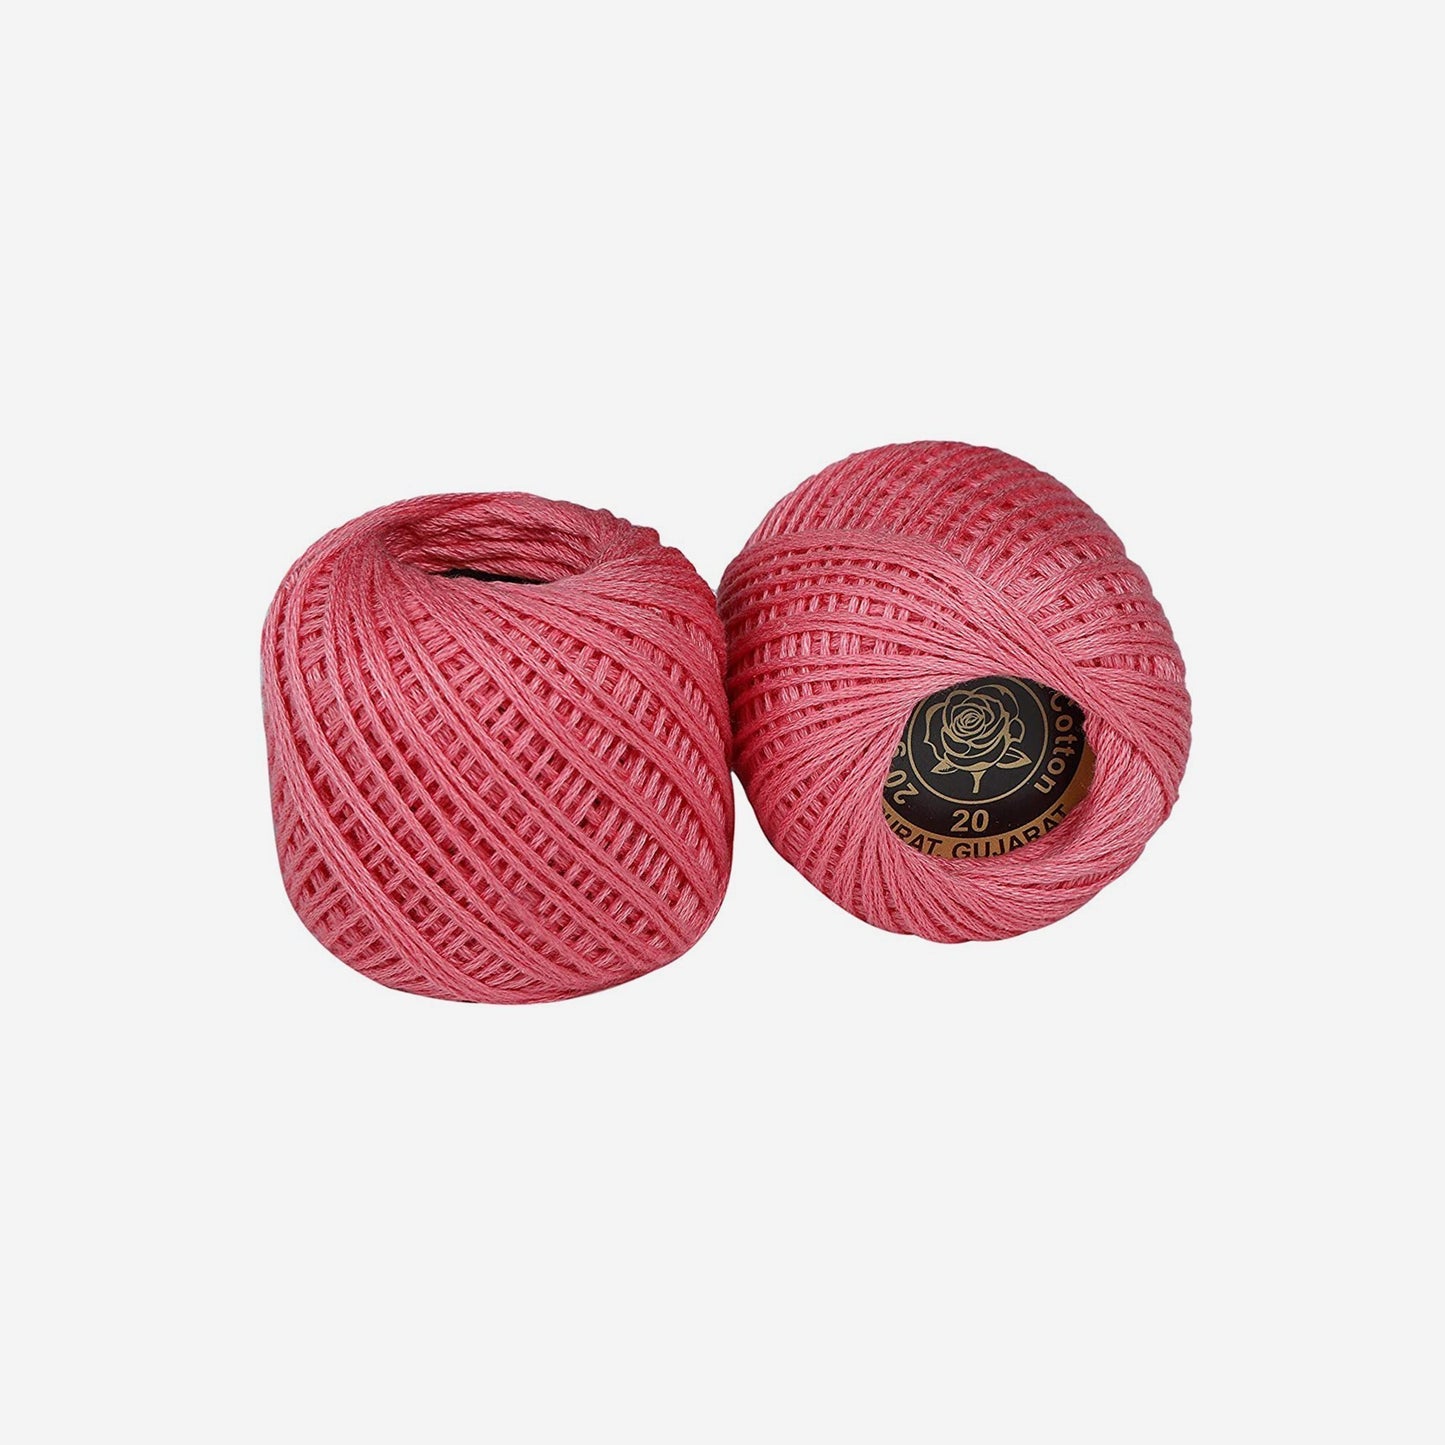 Hand-crochet hoops (Variation 15)